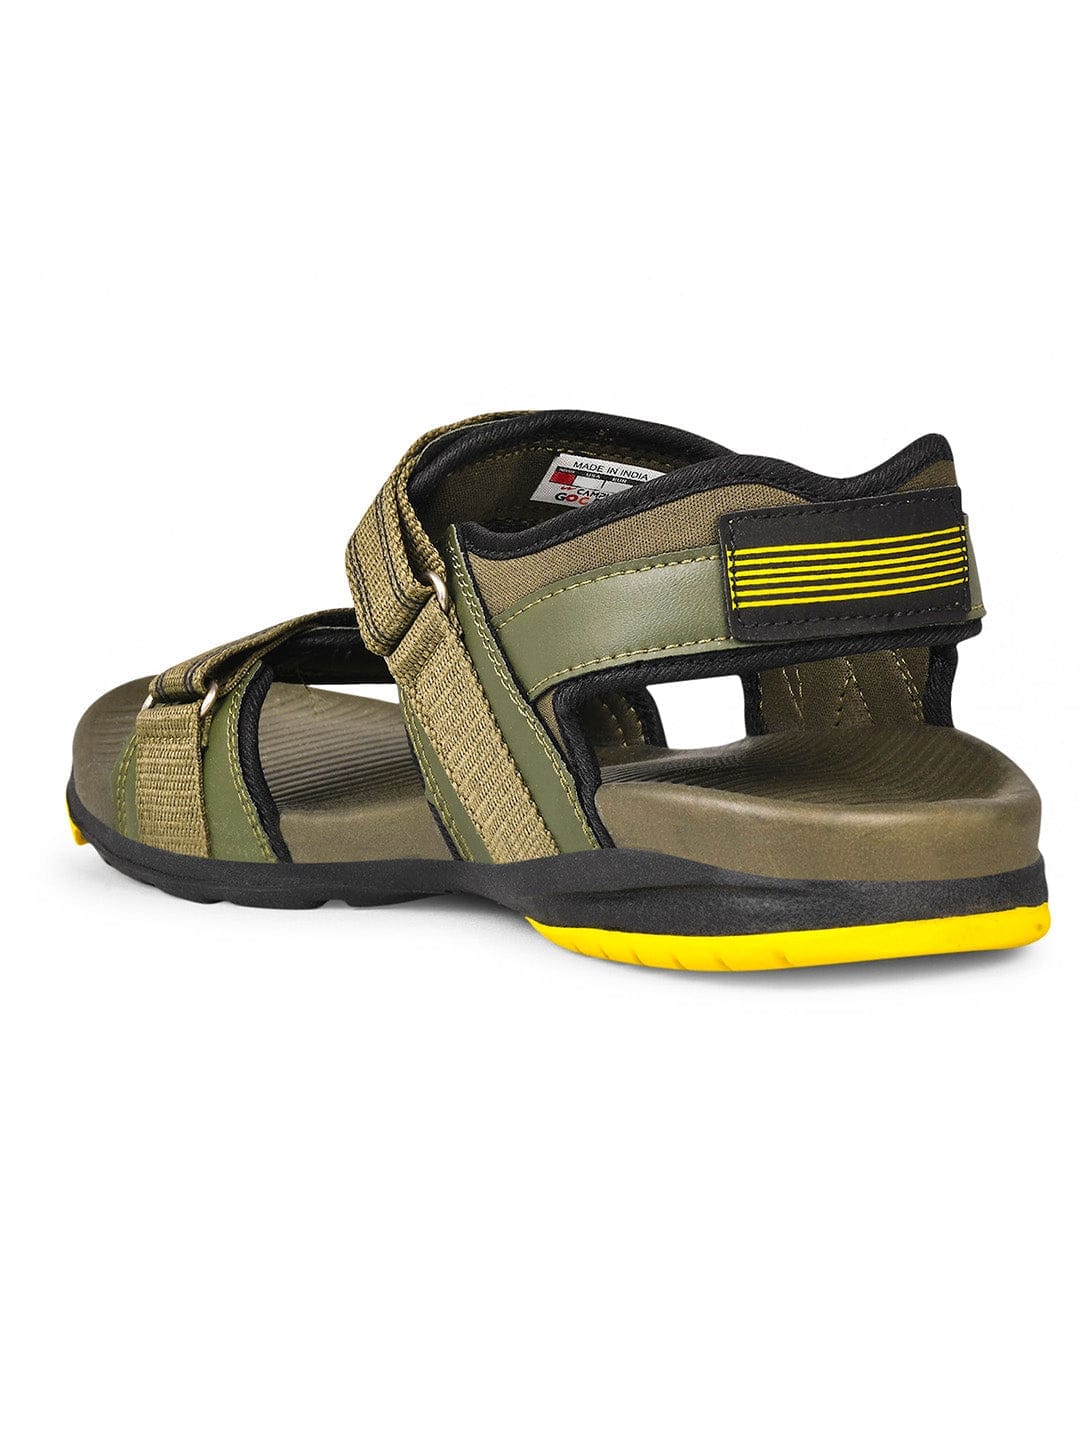 Teva Hurricane XLT 2 | Women's Outdoor Sandals | Rogan's Shoes